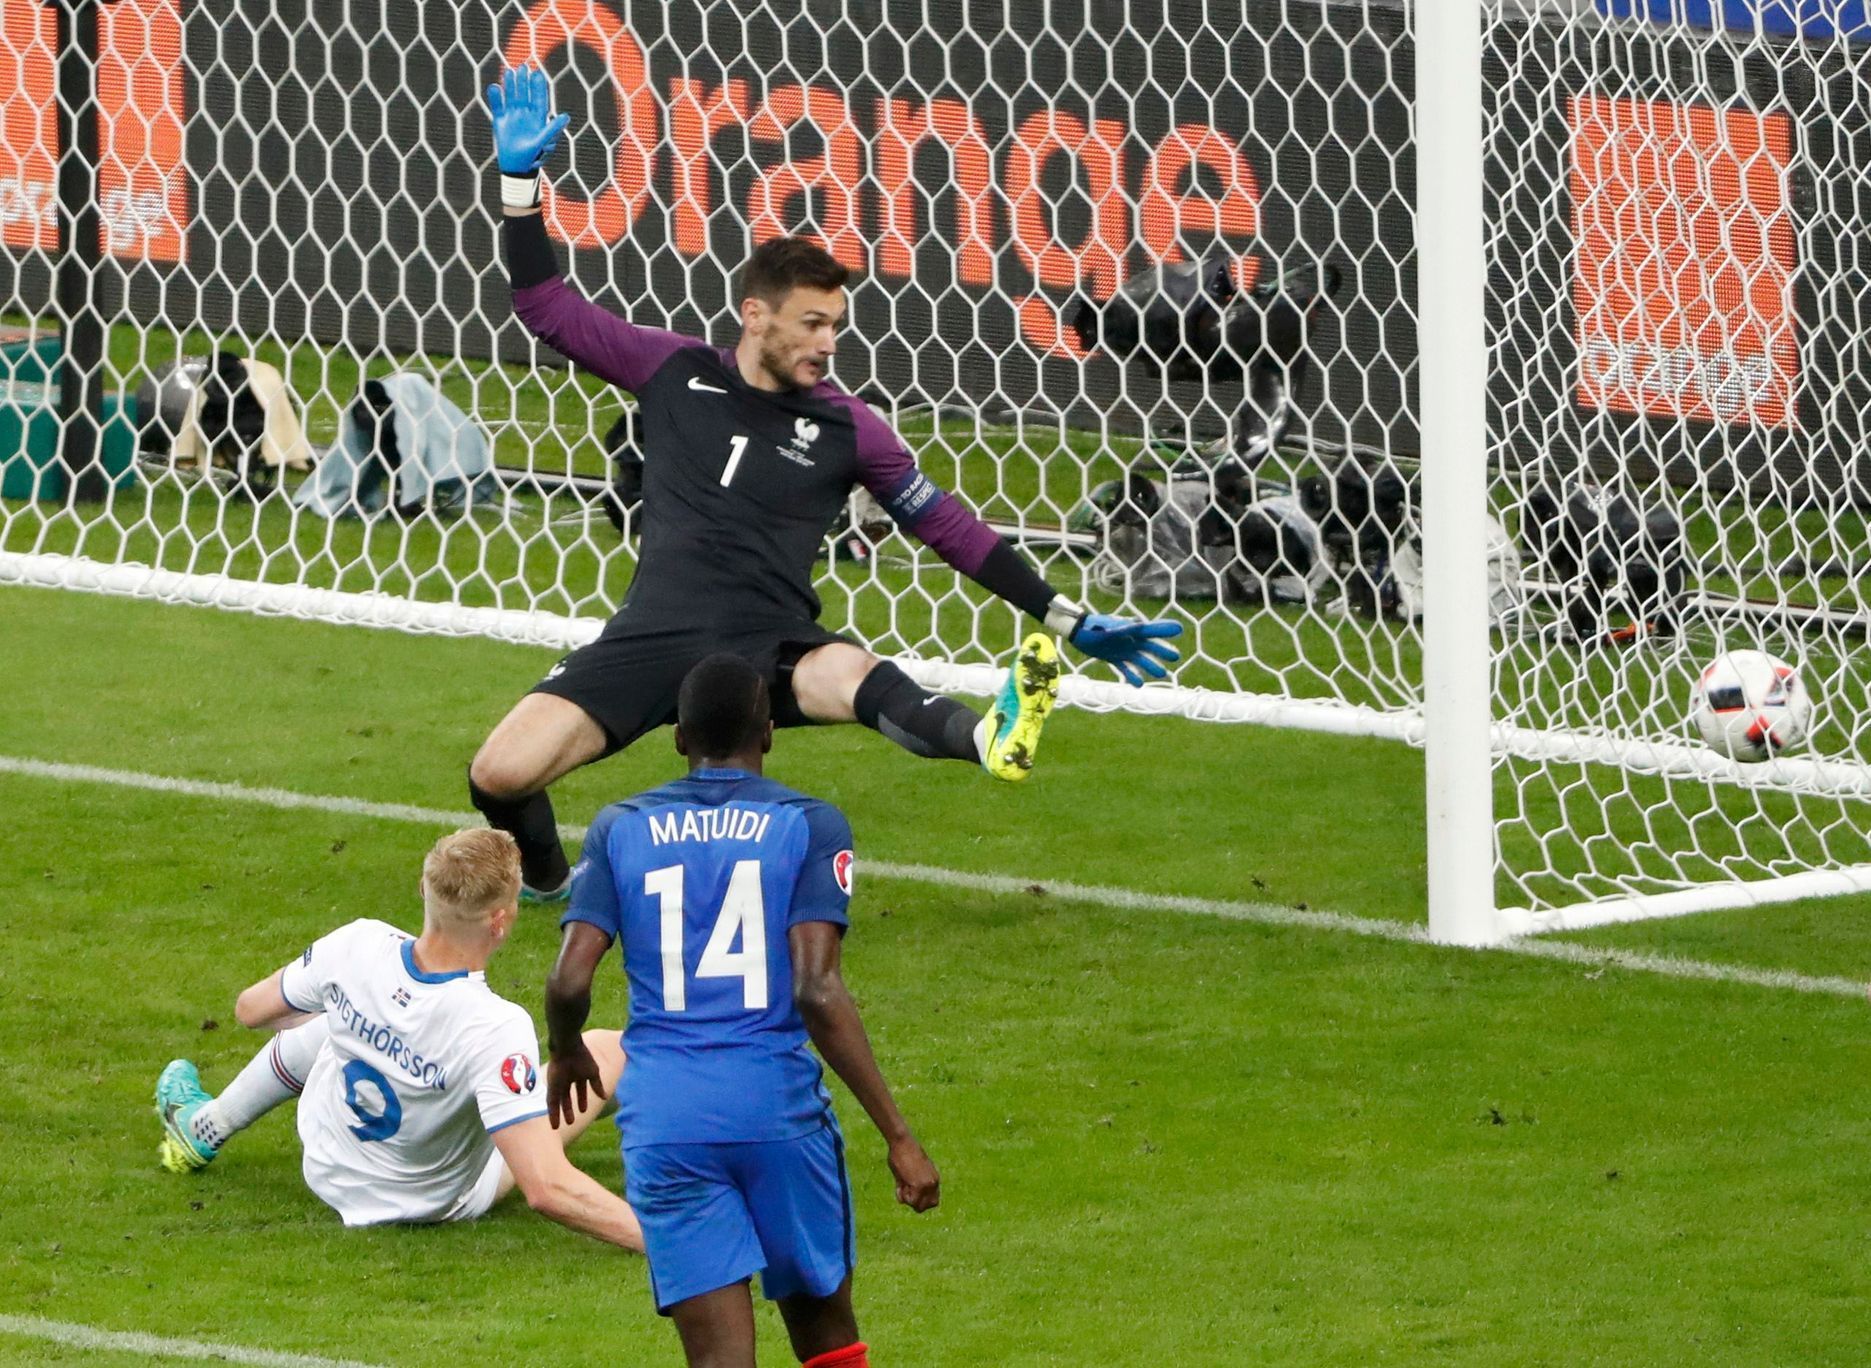 Euro 2016, Francie-Island: Kolbeinn Sigthórsson dává gól na 4:1